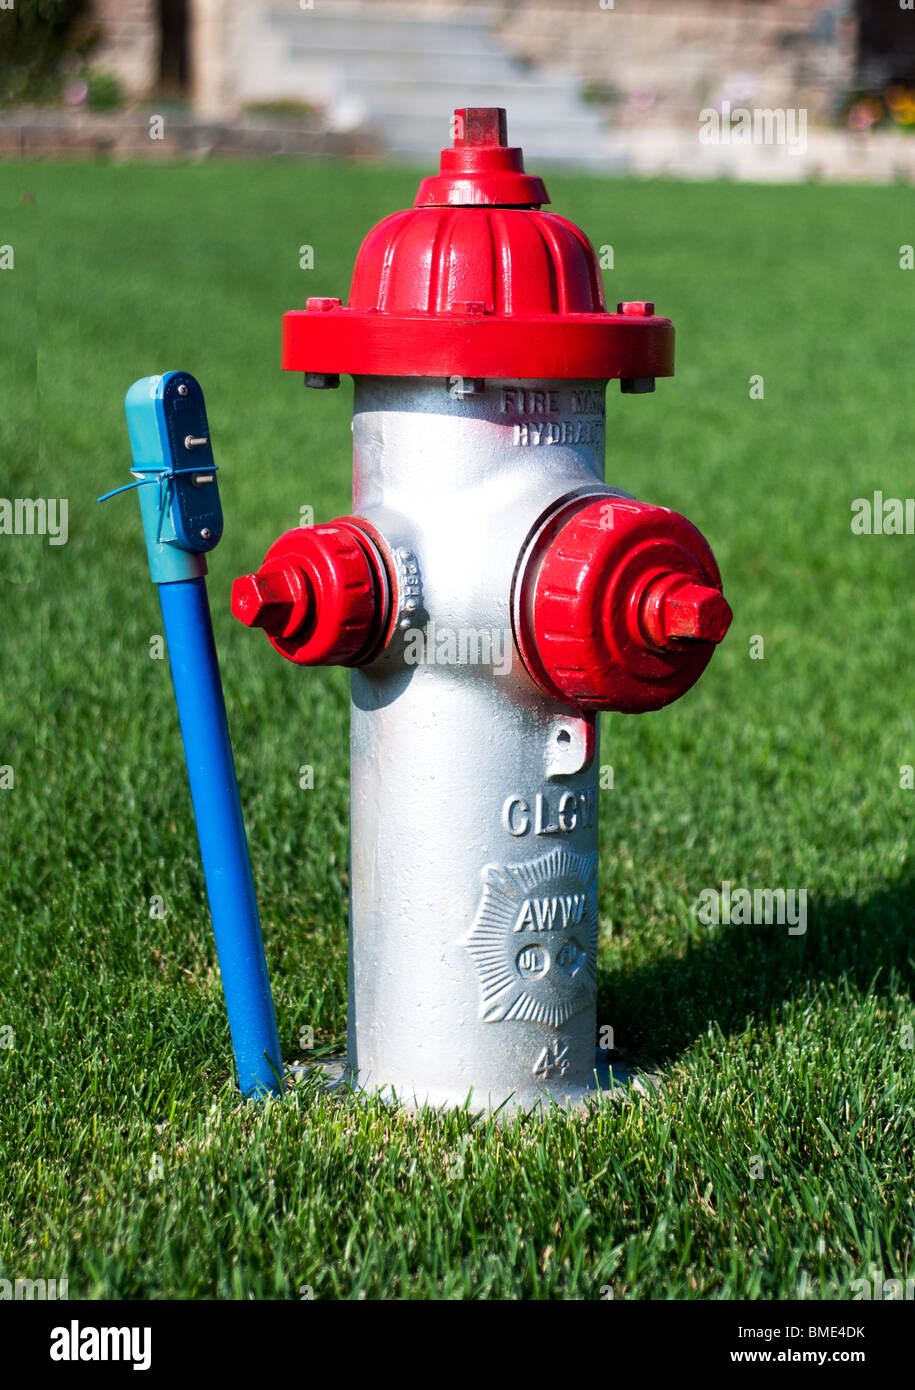 Einen silbernen Hydranten mit roten Kappen im Rasen. Wichita, Kansas, USA. Stockfoto